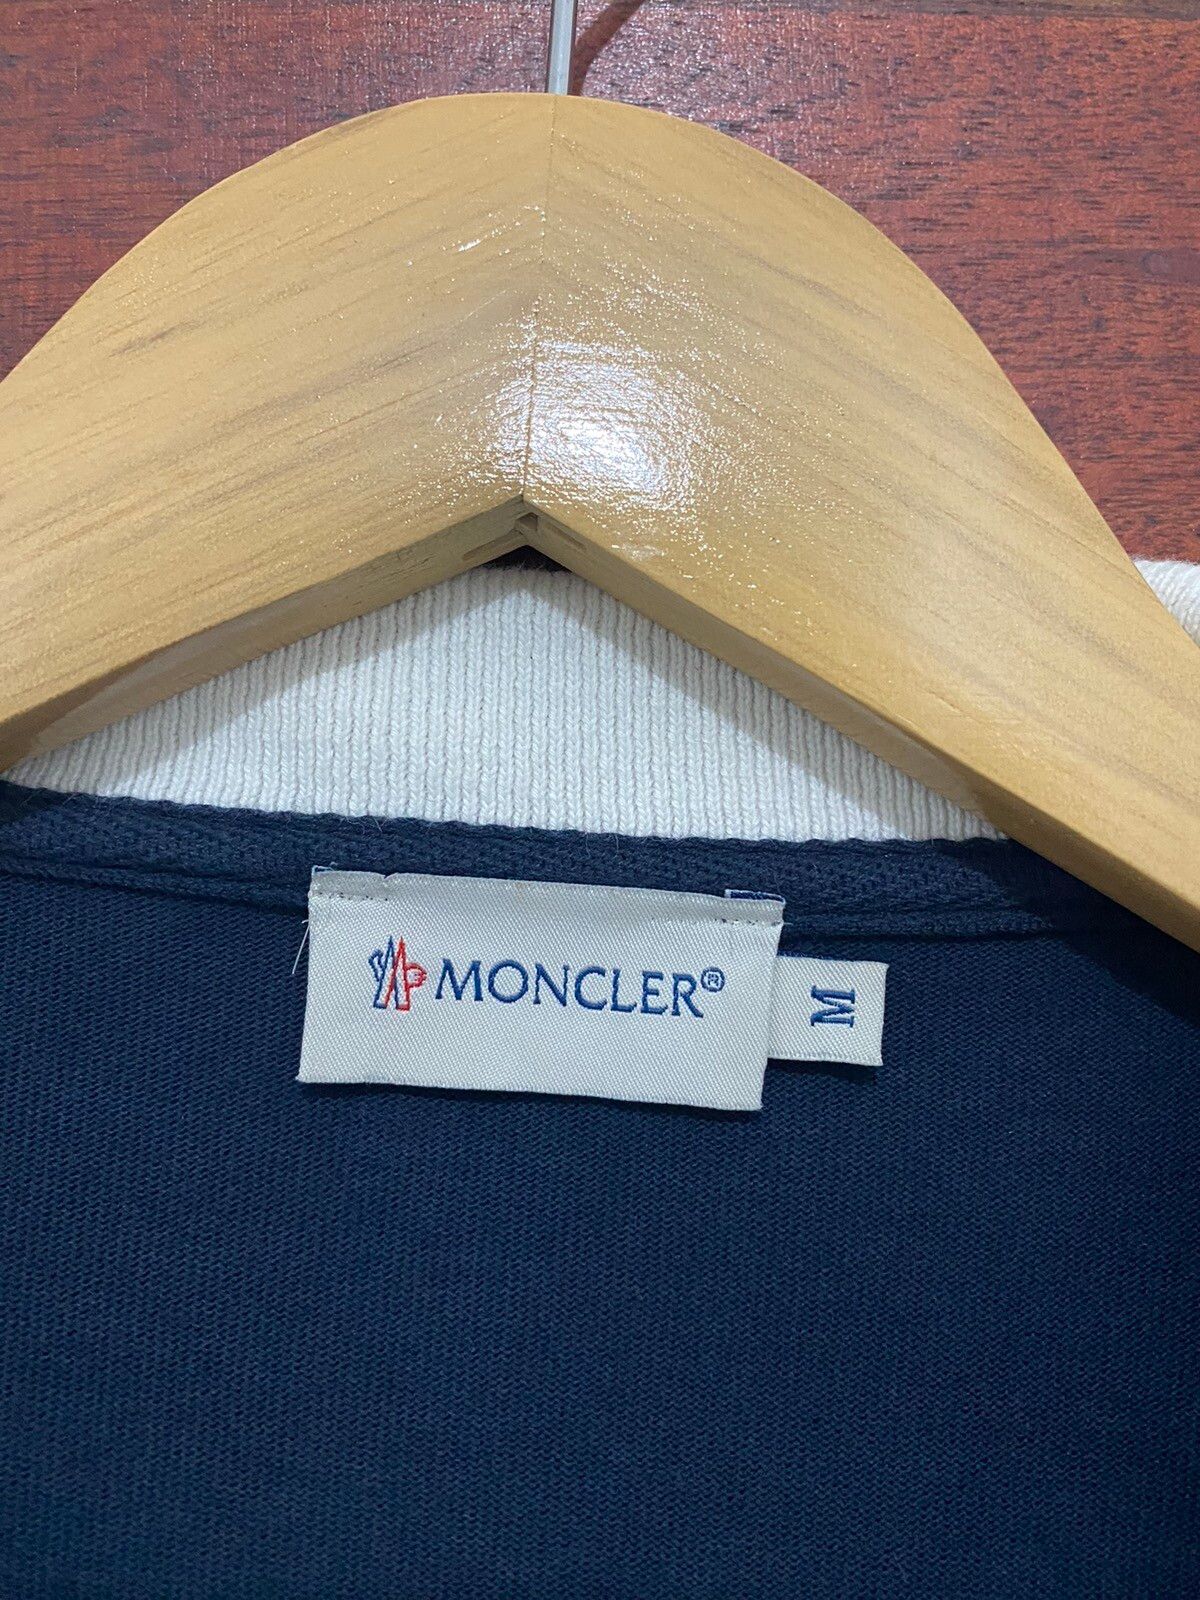 Vintage Moncler Tricolour Sweater Jacket - 8